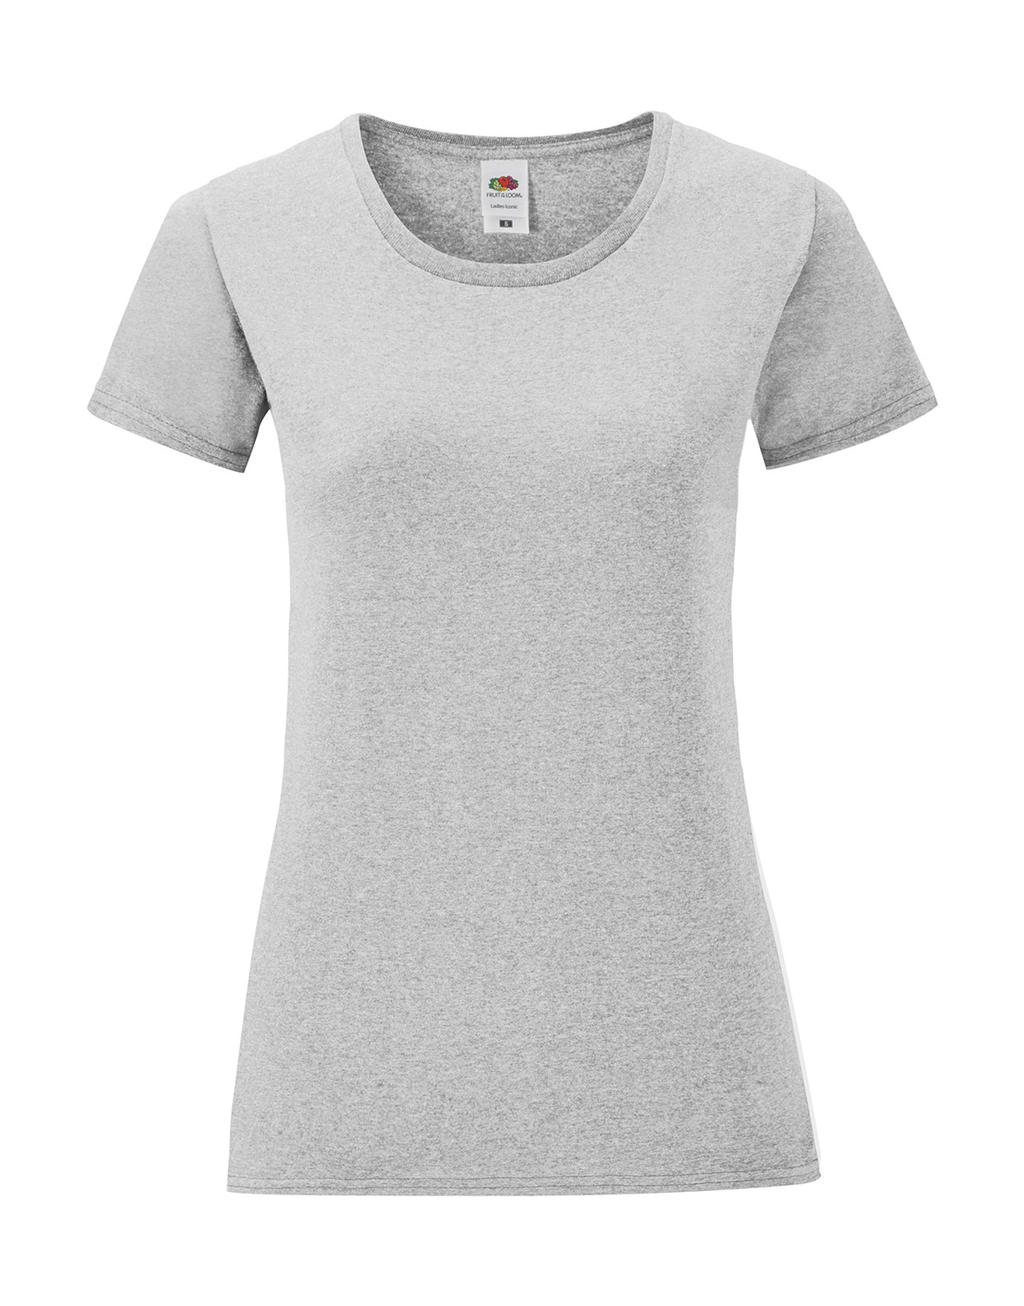 Dámske tričko Iconic 150 - heather grey